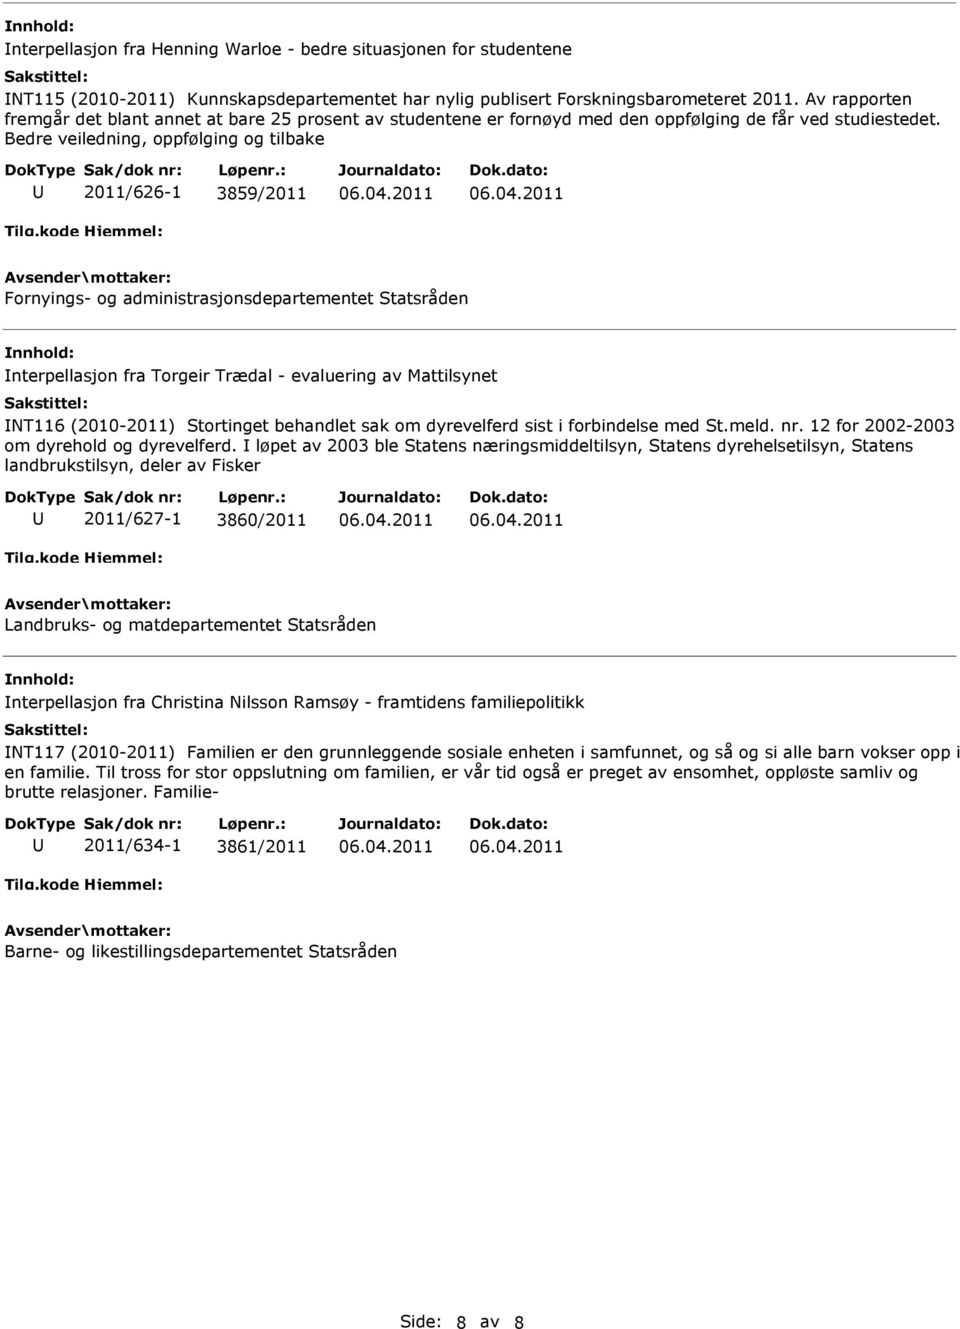 Bedre veiledning, oppfølging og tilbake 2011/626-1 3859/2011 Fornyings- og administrasjonsdepartementet Statsråden nterpellasjon fra Torgeir Trædal - evaluering av Mattilsynet NT116 (2010-2011)